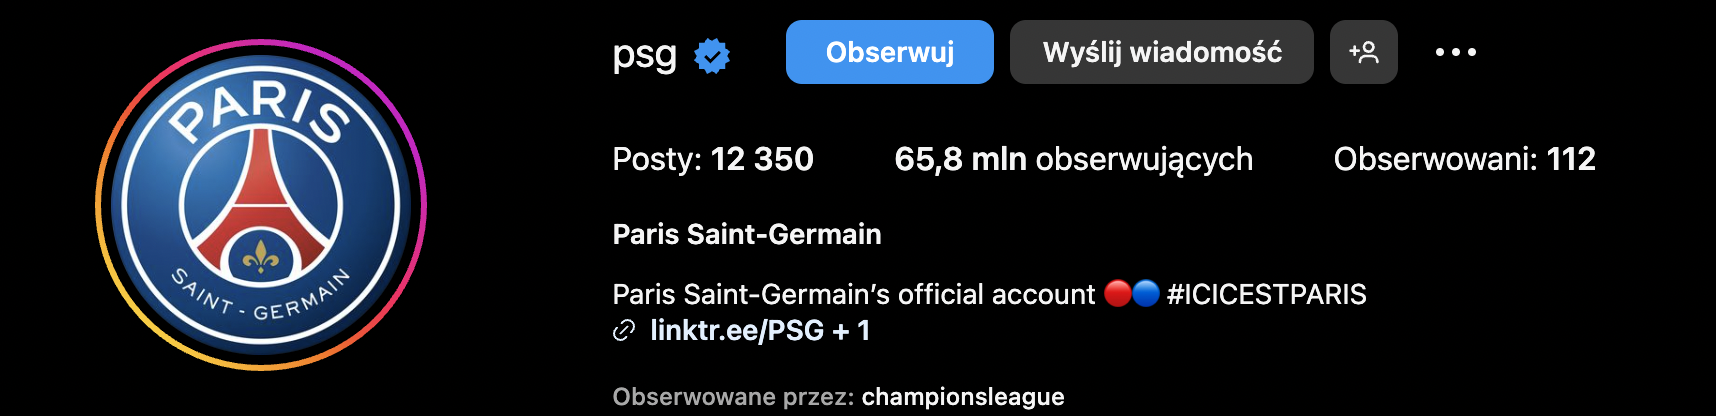 Liczba obserwujących PSG na Instagramie wynosi niecałe 66 mln (19.10.23)